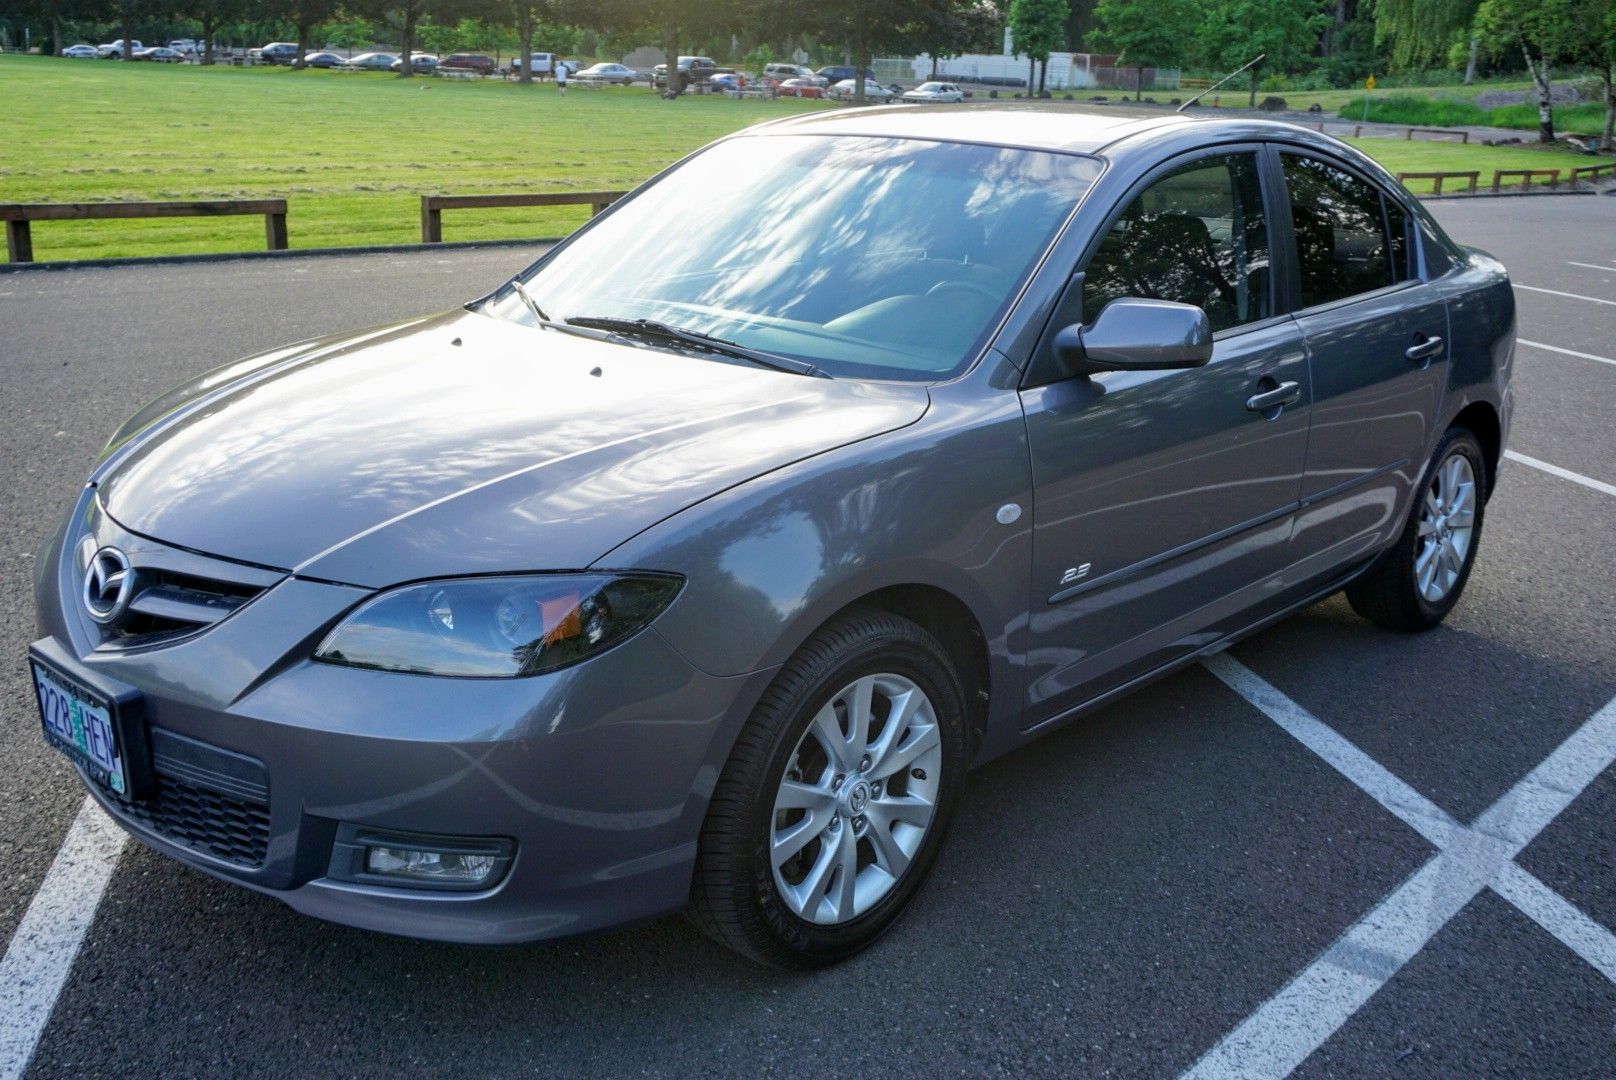 2007 Mazda Mazda3